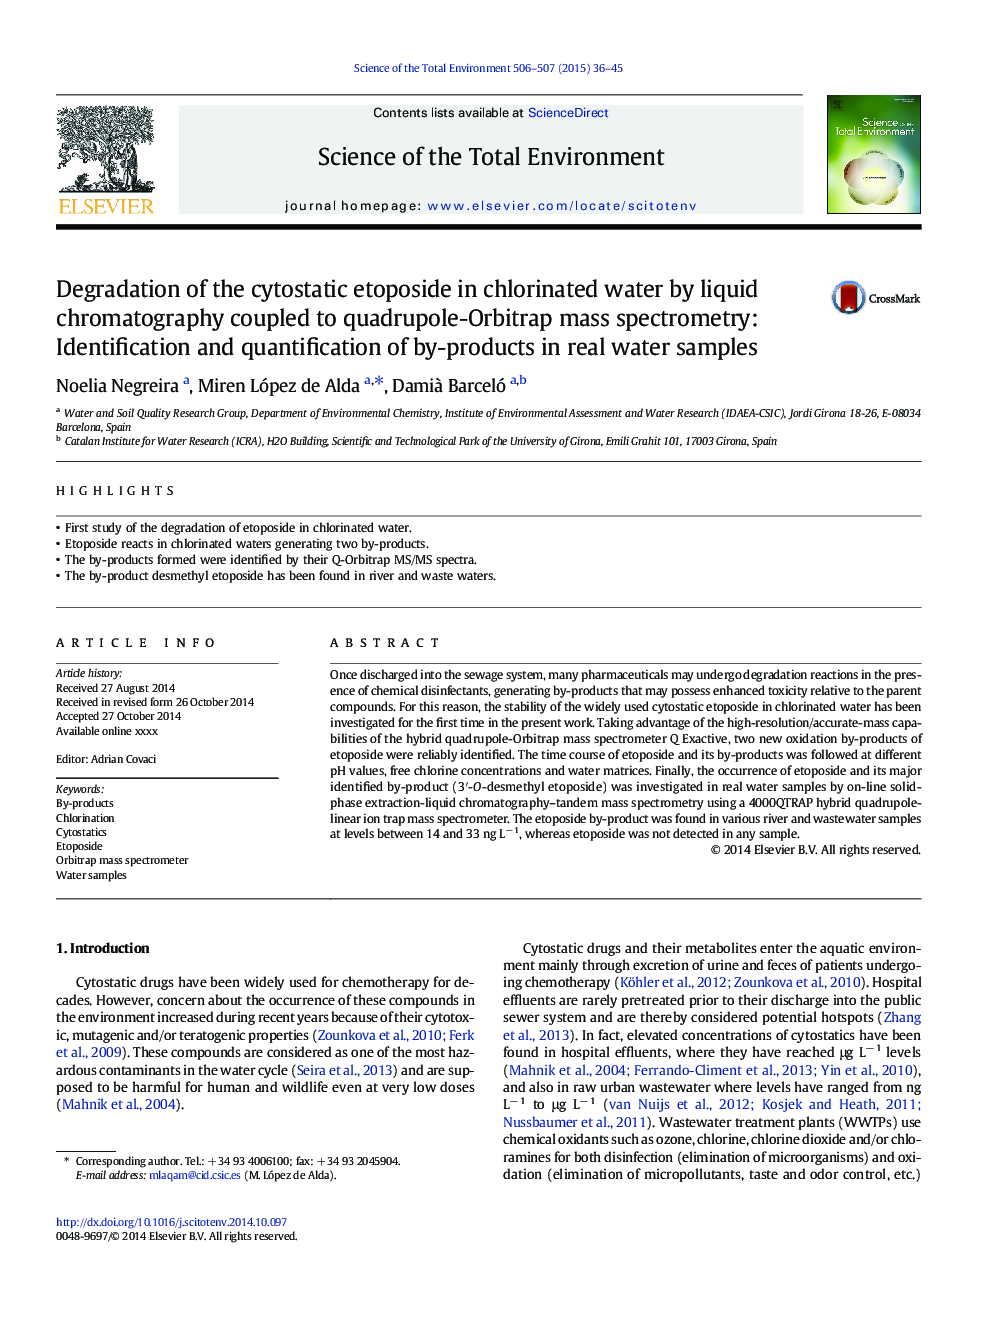 تجزیه اینتوزید سیتواستاتیک در آب کلر شده با کروماتوگرافی مایع همراه با طیف سنجی جرمی چهارپروپول-اوربیتبر: شناسایی و تعیین مقدار کالاهای جانبی در نمونه های واقعی آب 